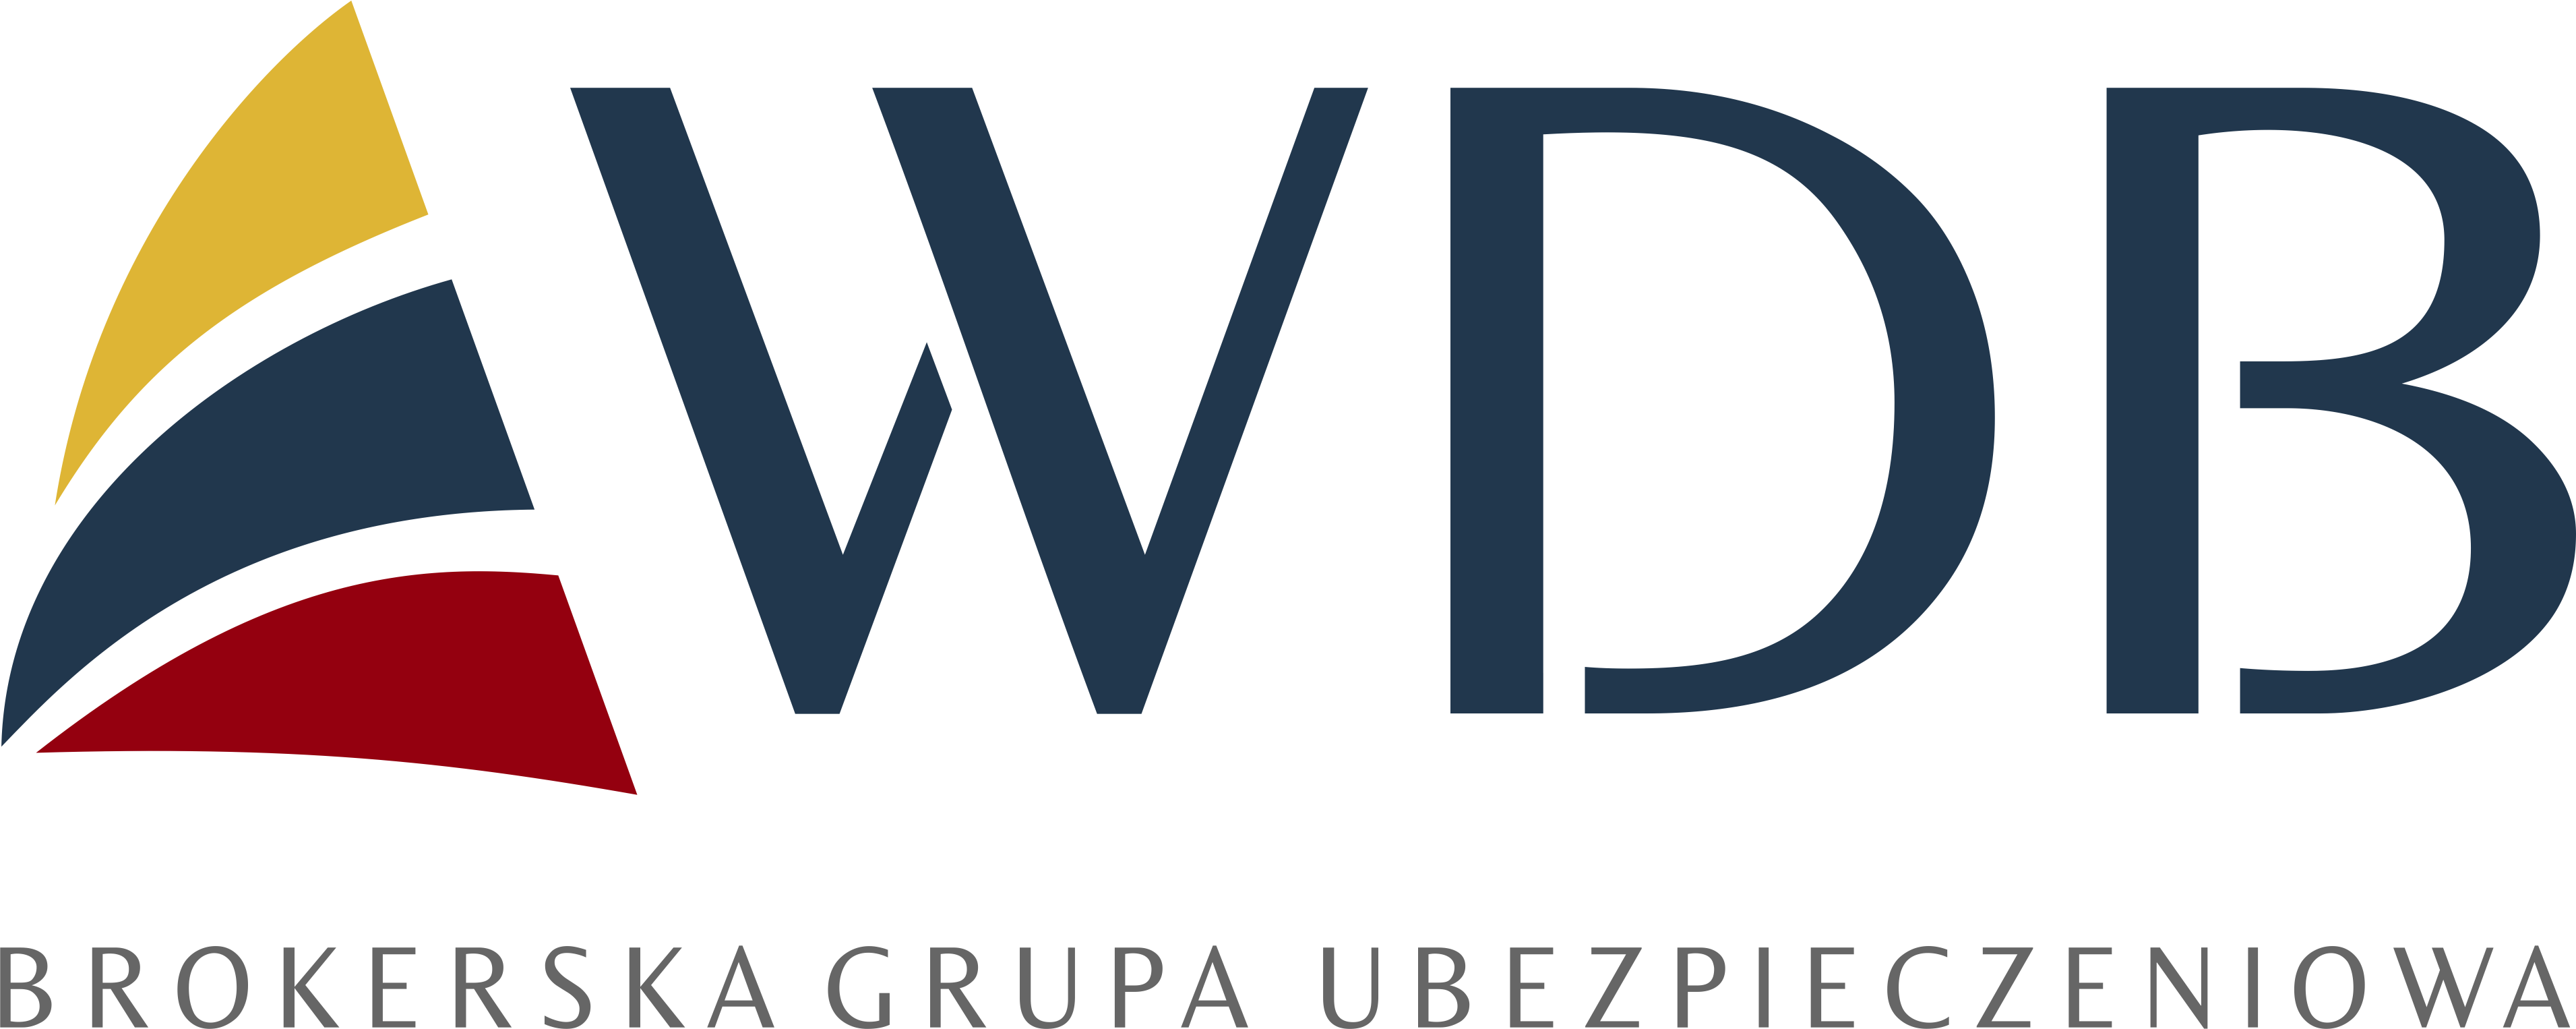 WDB - Programy ubezpieczeniowe